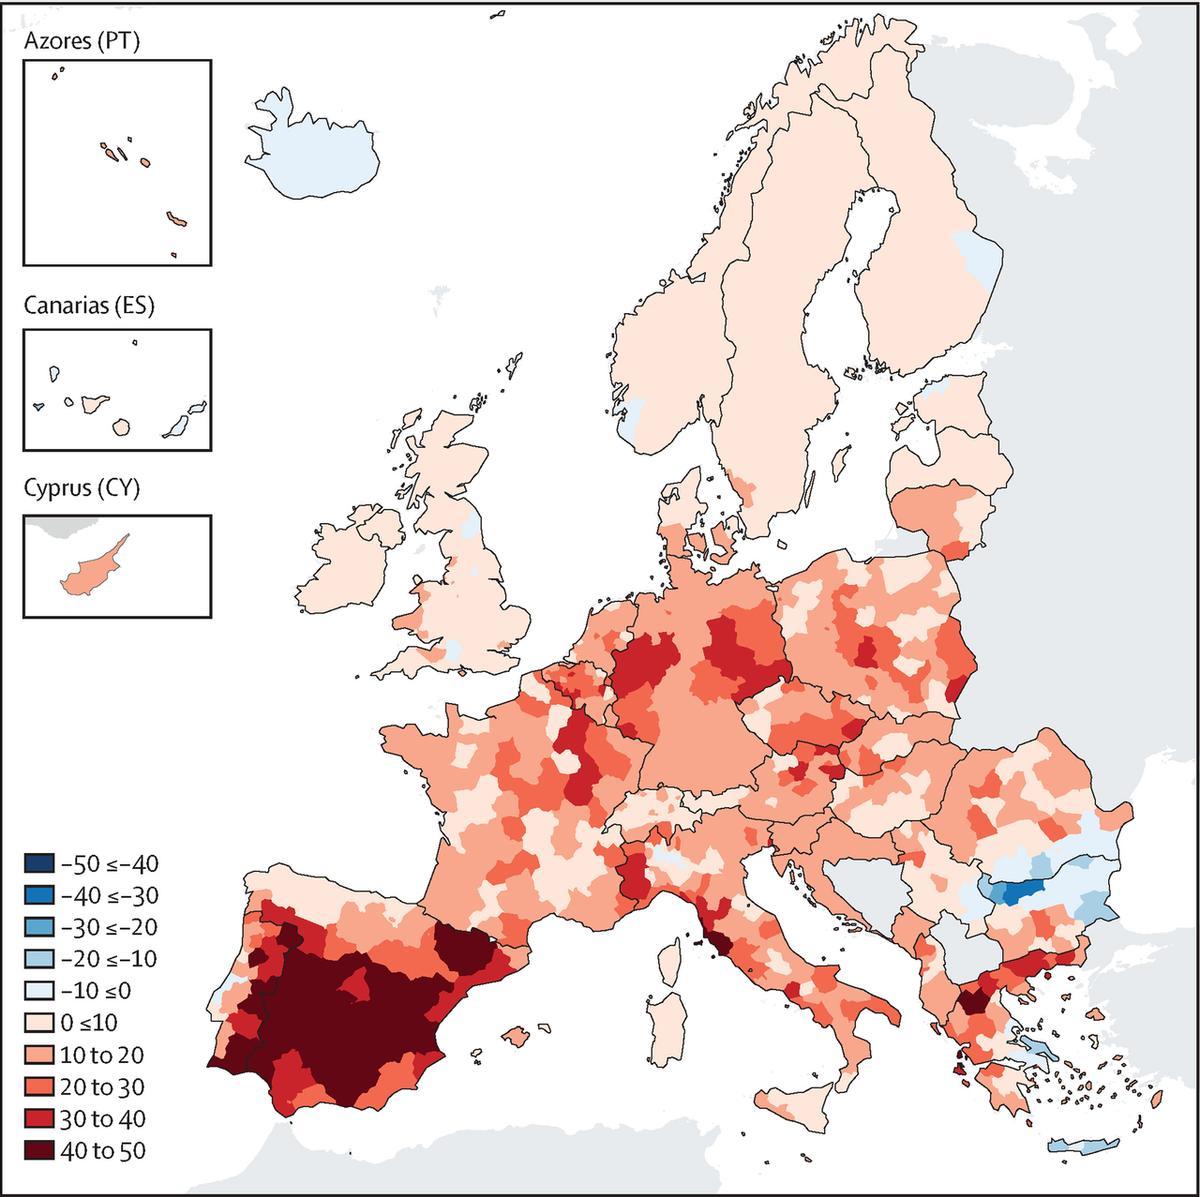 Tendencias en la incidencia de mortalidad relacionada con el calor (muertes anuales por millón por década) en Europa para la población general (2000-2020). Los tonos rojos indican una tendencia creciente y los azules una tendencia decreciente. Cuanto más oscuro sea el color, mayor será la tendencia.